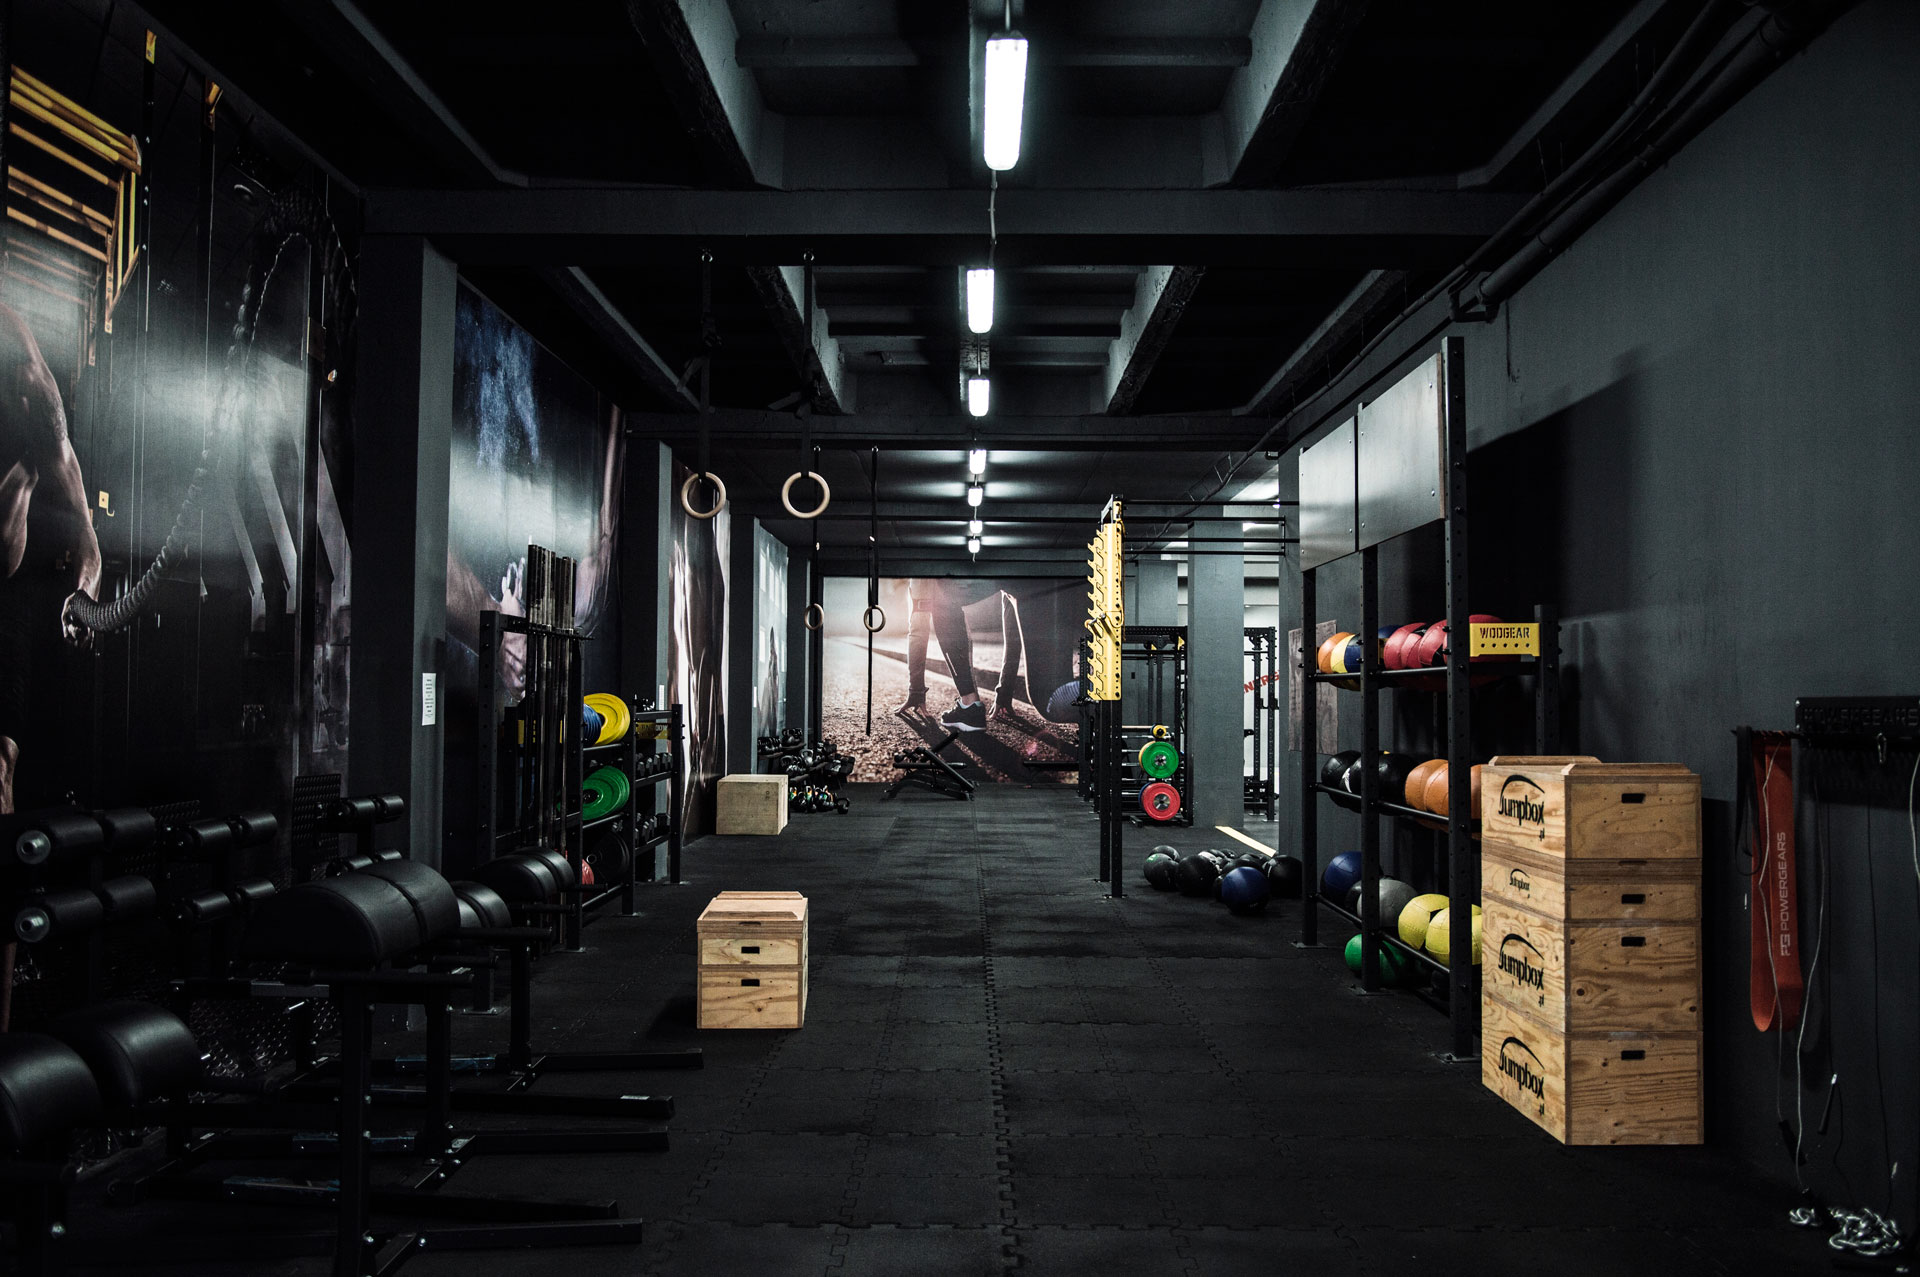 Funkčné fitness centrum | Pro Workout Gym Prešov